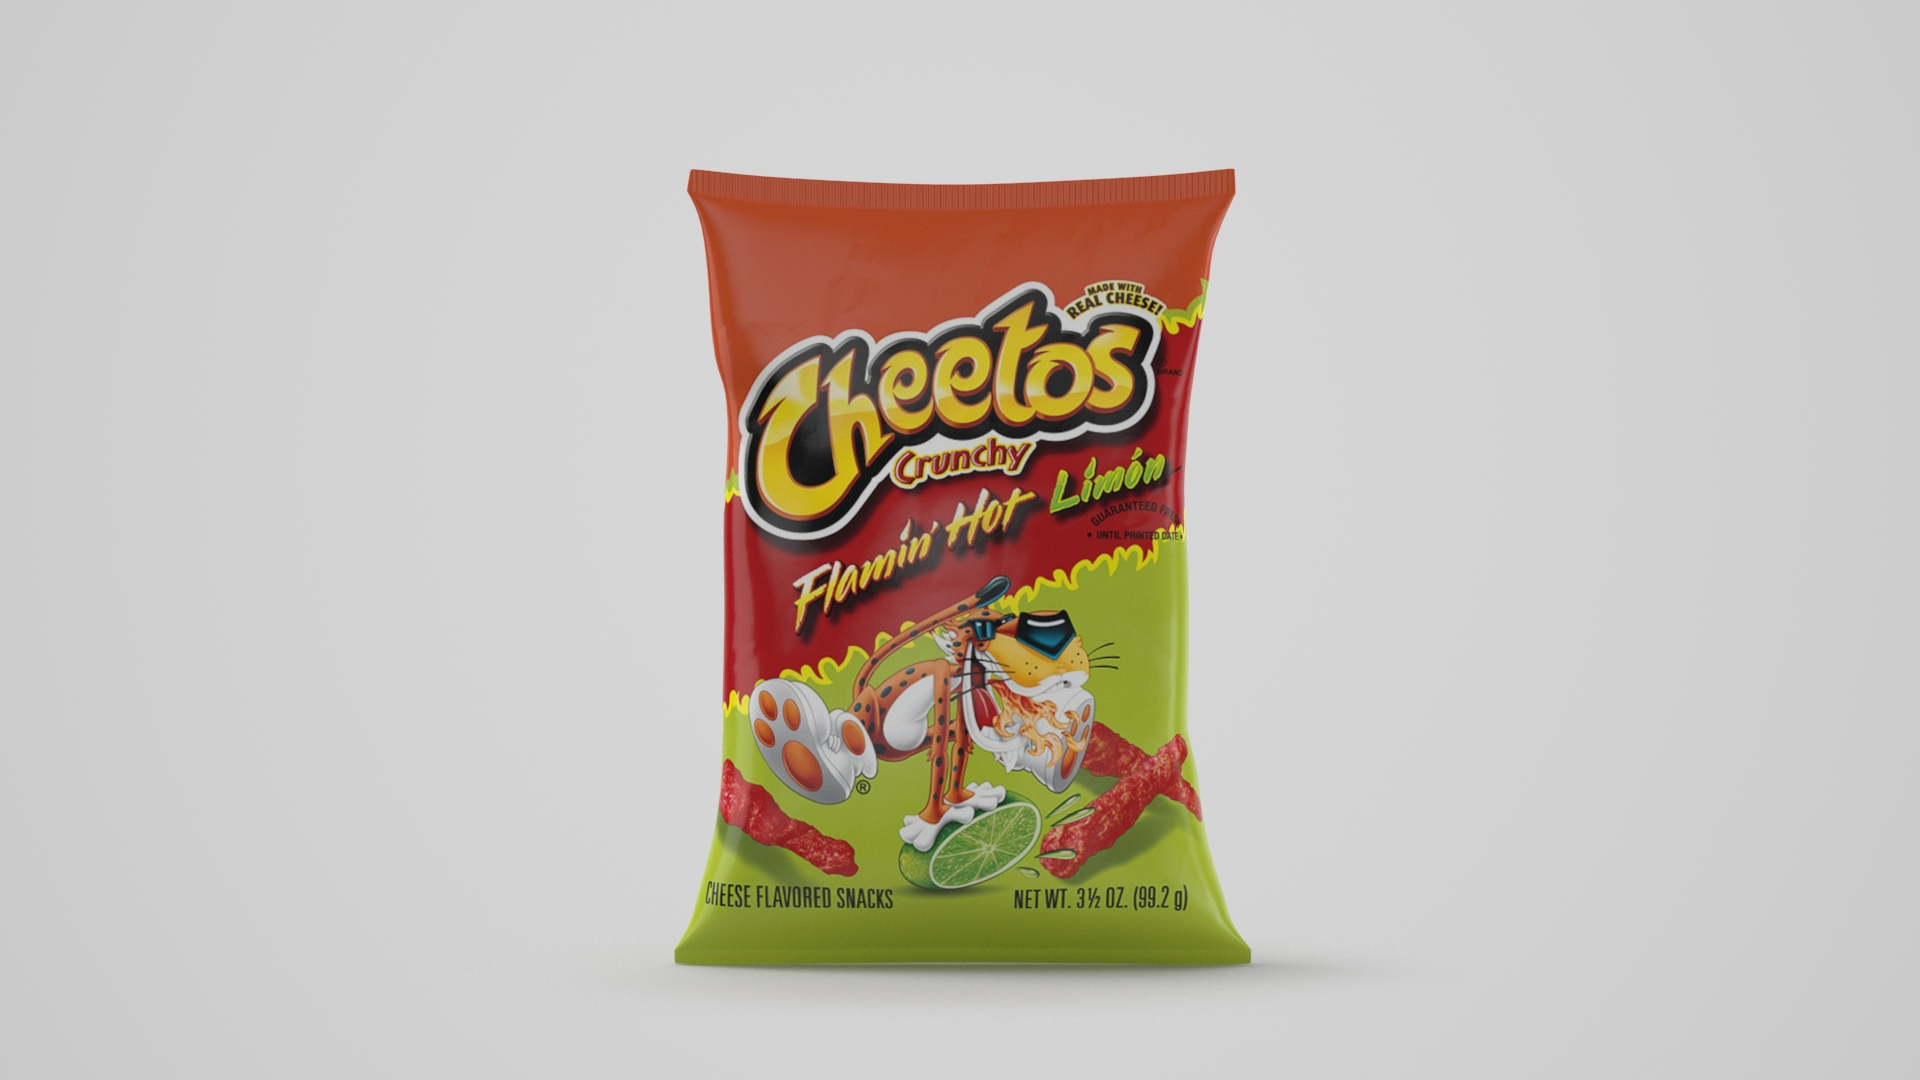 Cheetos Guatemala added a new photo — - Cheetos Guatemala